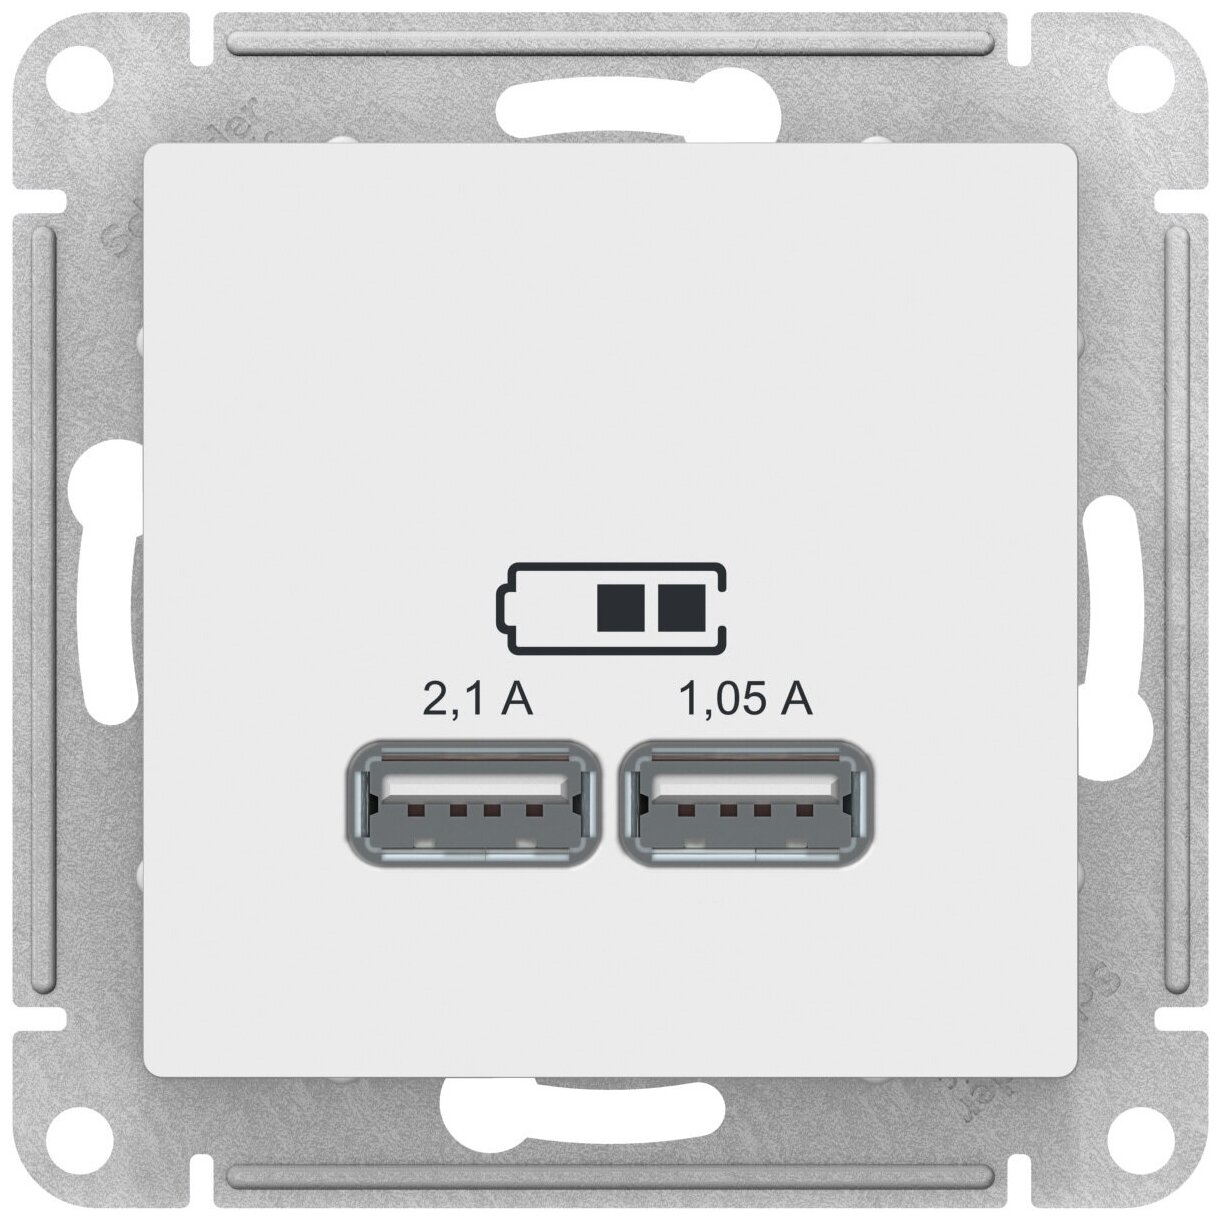 SE AtlasDesign Бел Розетка USB 5В 1 порт x 21 А 2 порта х 105 А механизм (комплект 6шт)